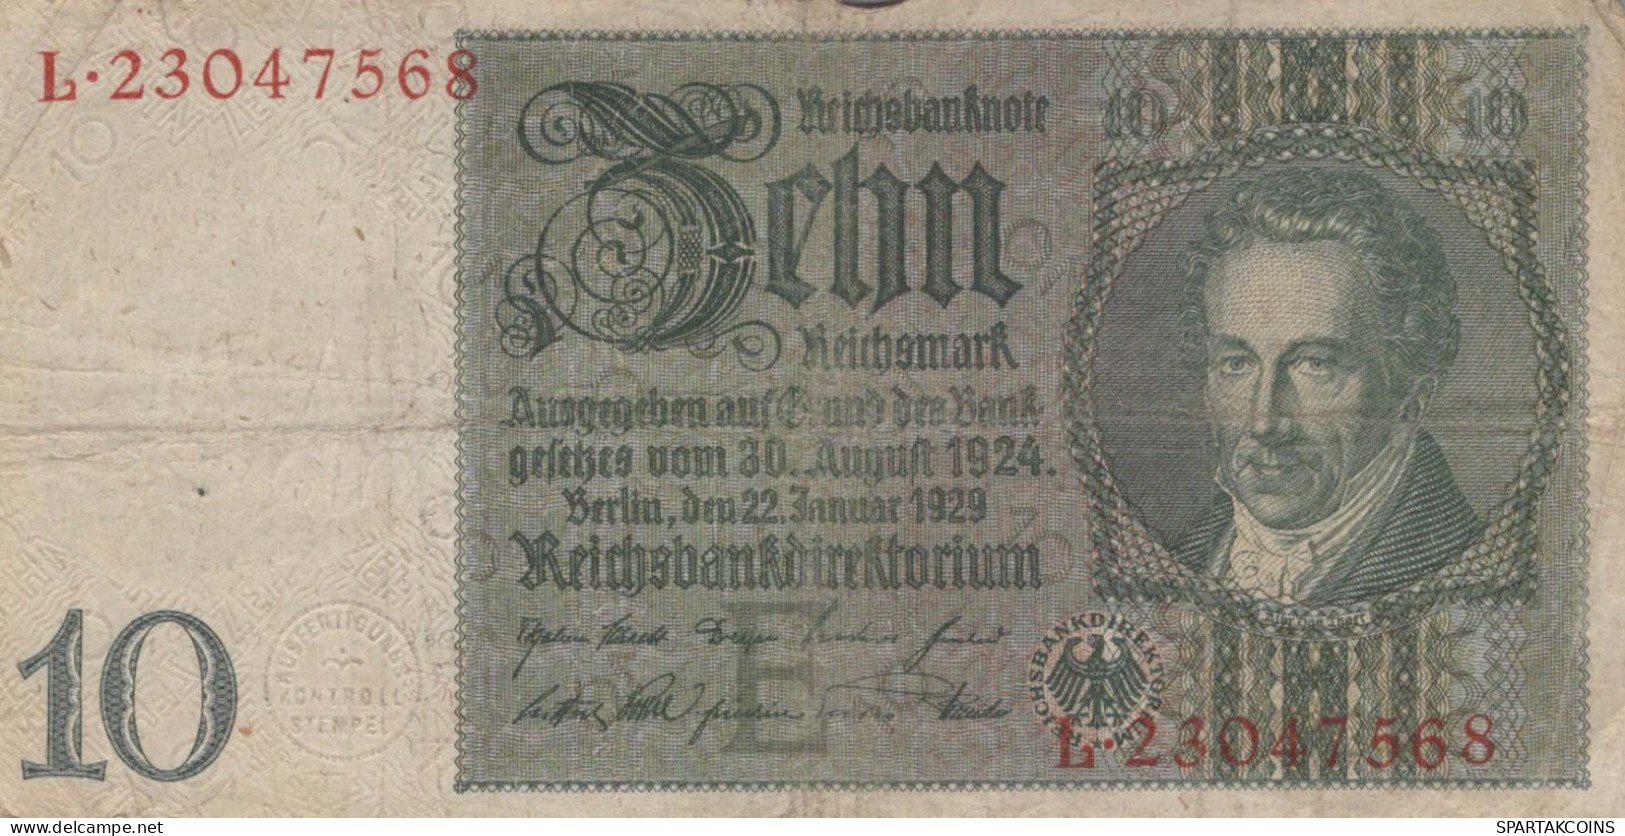 10 REICHSMARK 1924 Stadt BERLIN DEUTSCHLAND Notgeld Papiergeld Banknote #PK810 - [11] Lokale Uitgaven